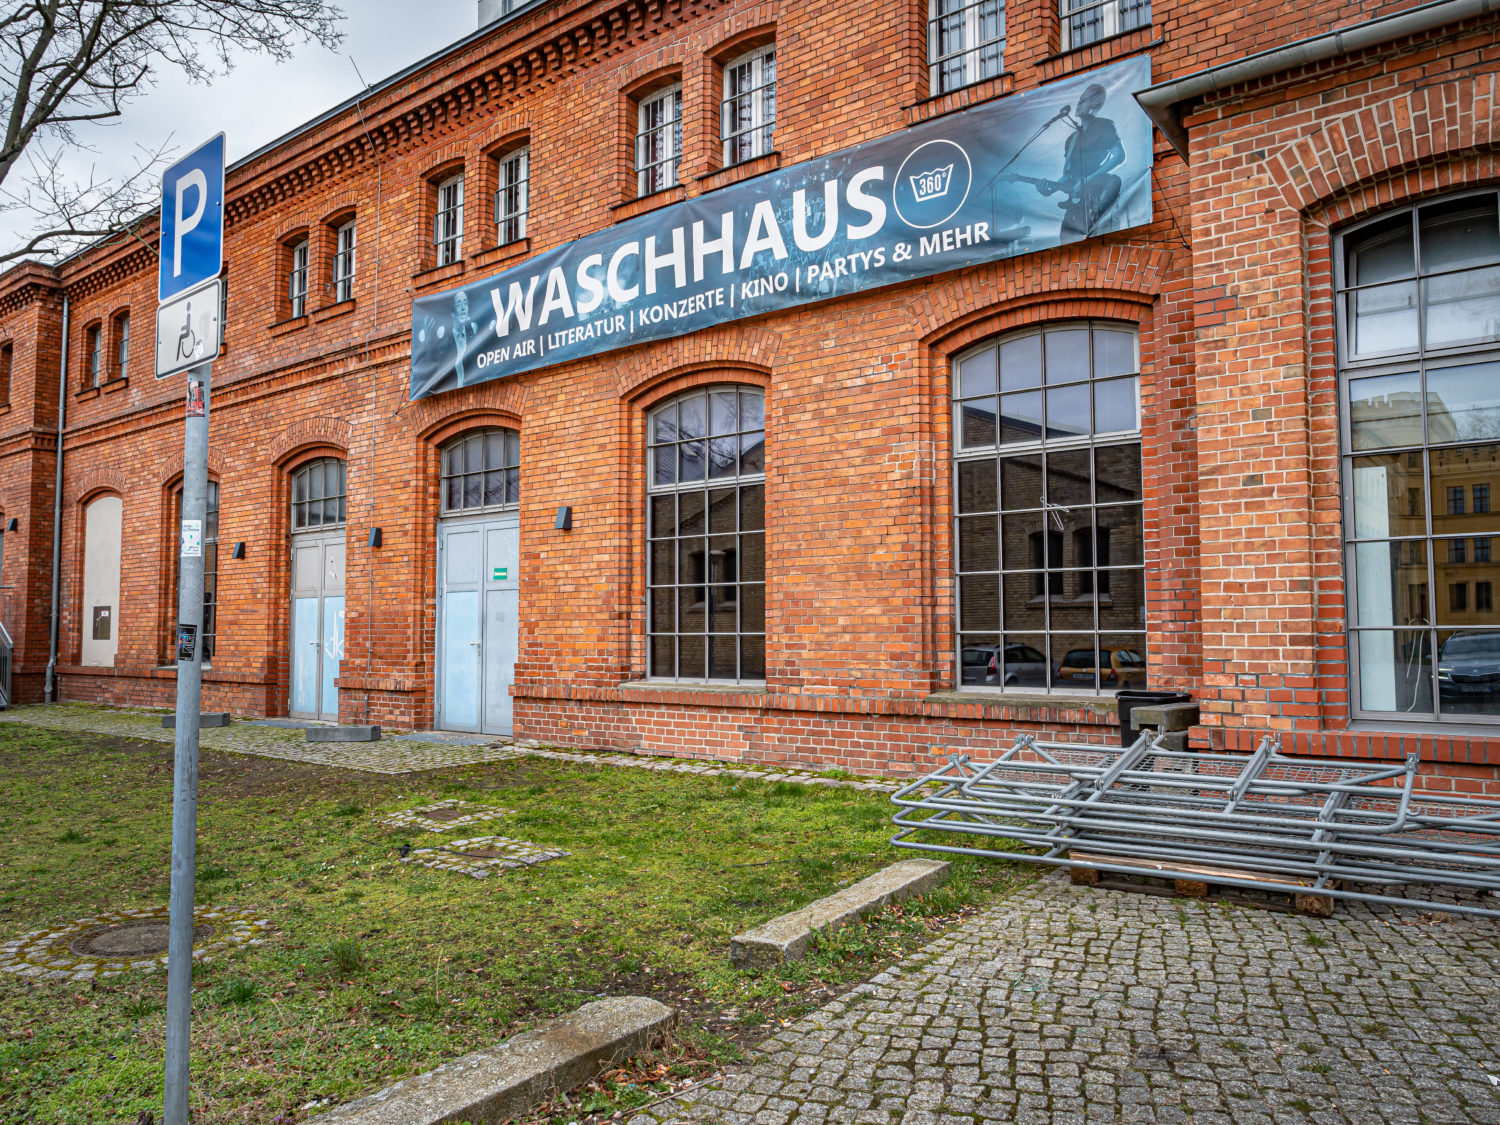 Tipps Potsdam Das Waschhaus ist eine beliebte Adresse für Konzerte und Open-Air-Abende in Potsdam.